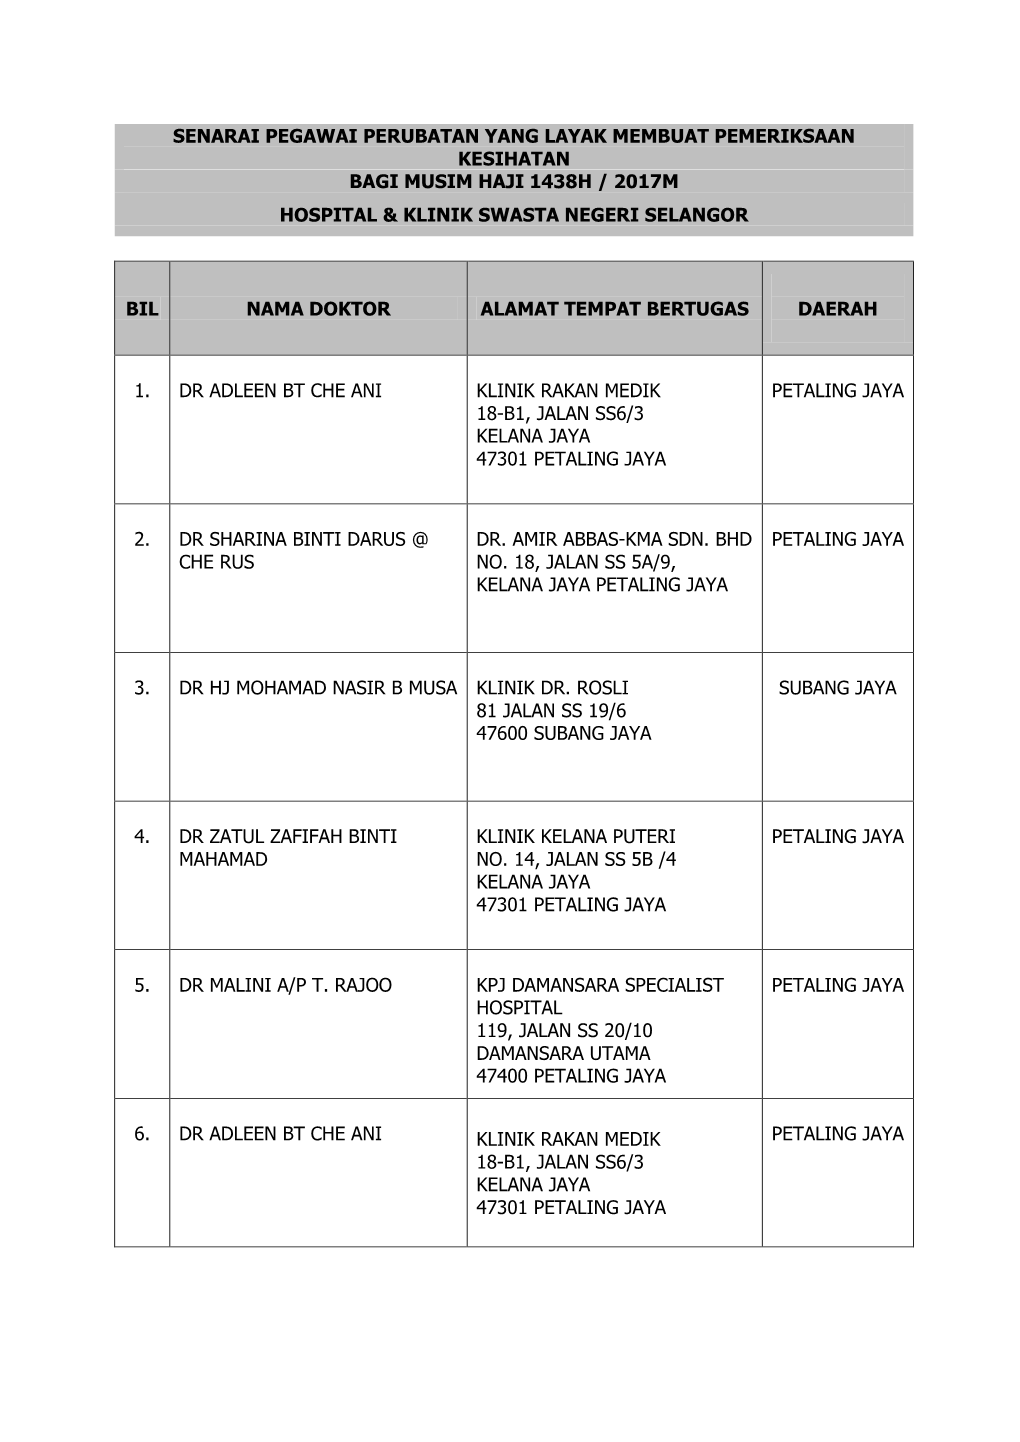 Senarai Pegawai Perubatan Yang Layak Membuat Pemeriksaan Kesihatan Bagi Musim Haji 1438H / 2017M Hospital & Klinik Swasta Negeri Selangor